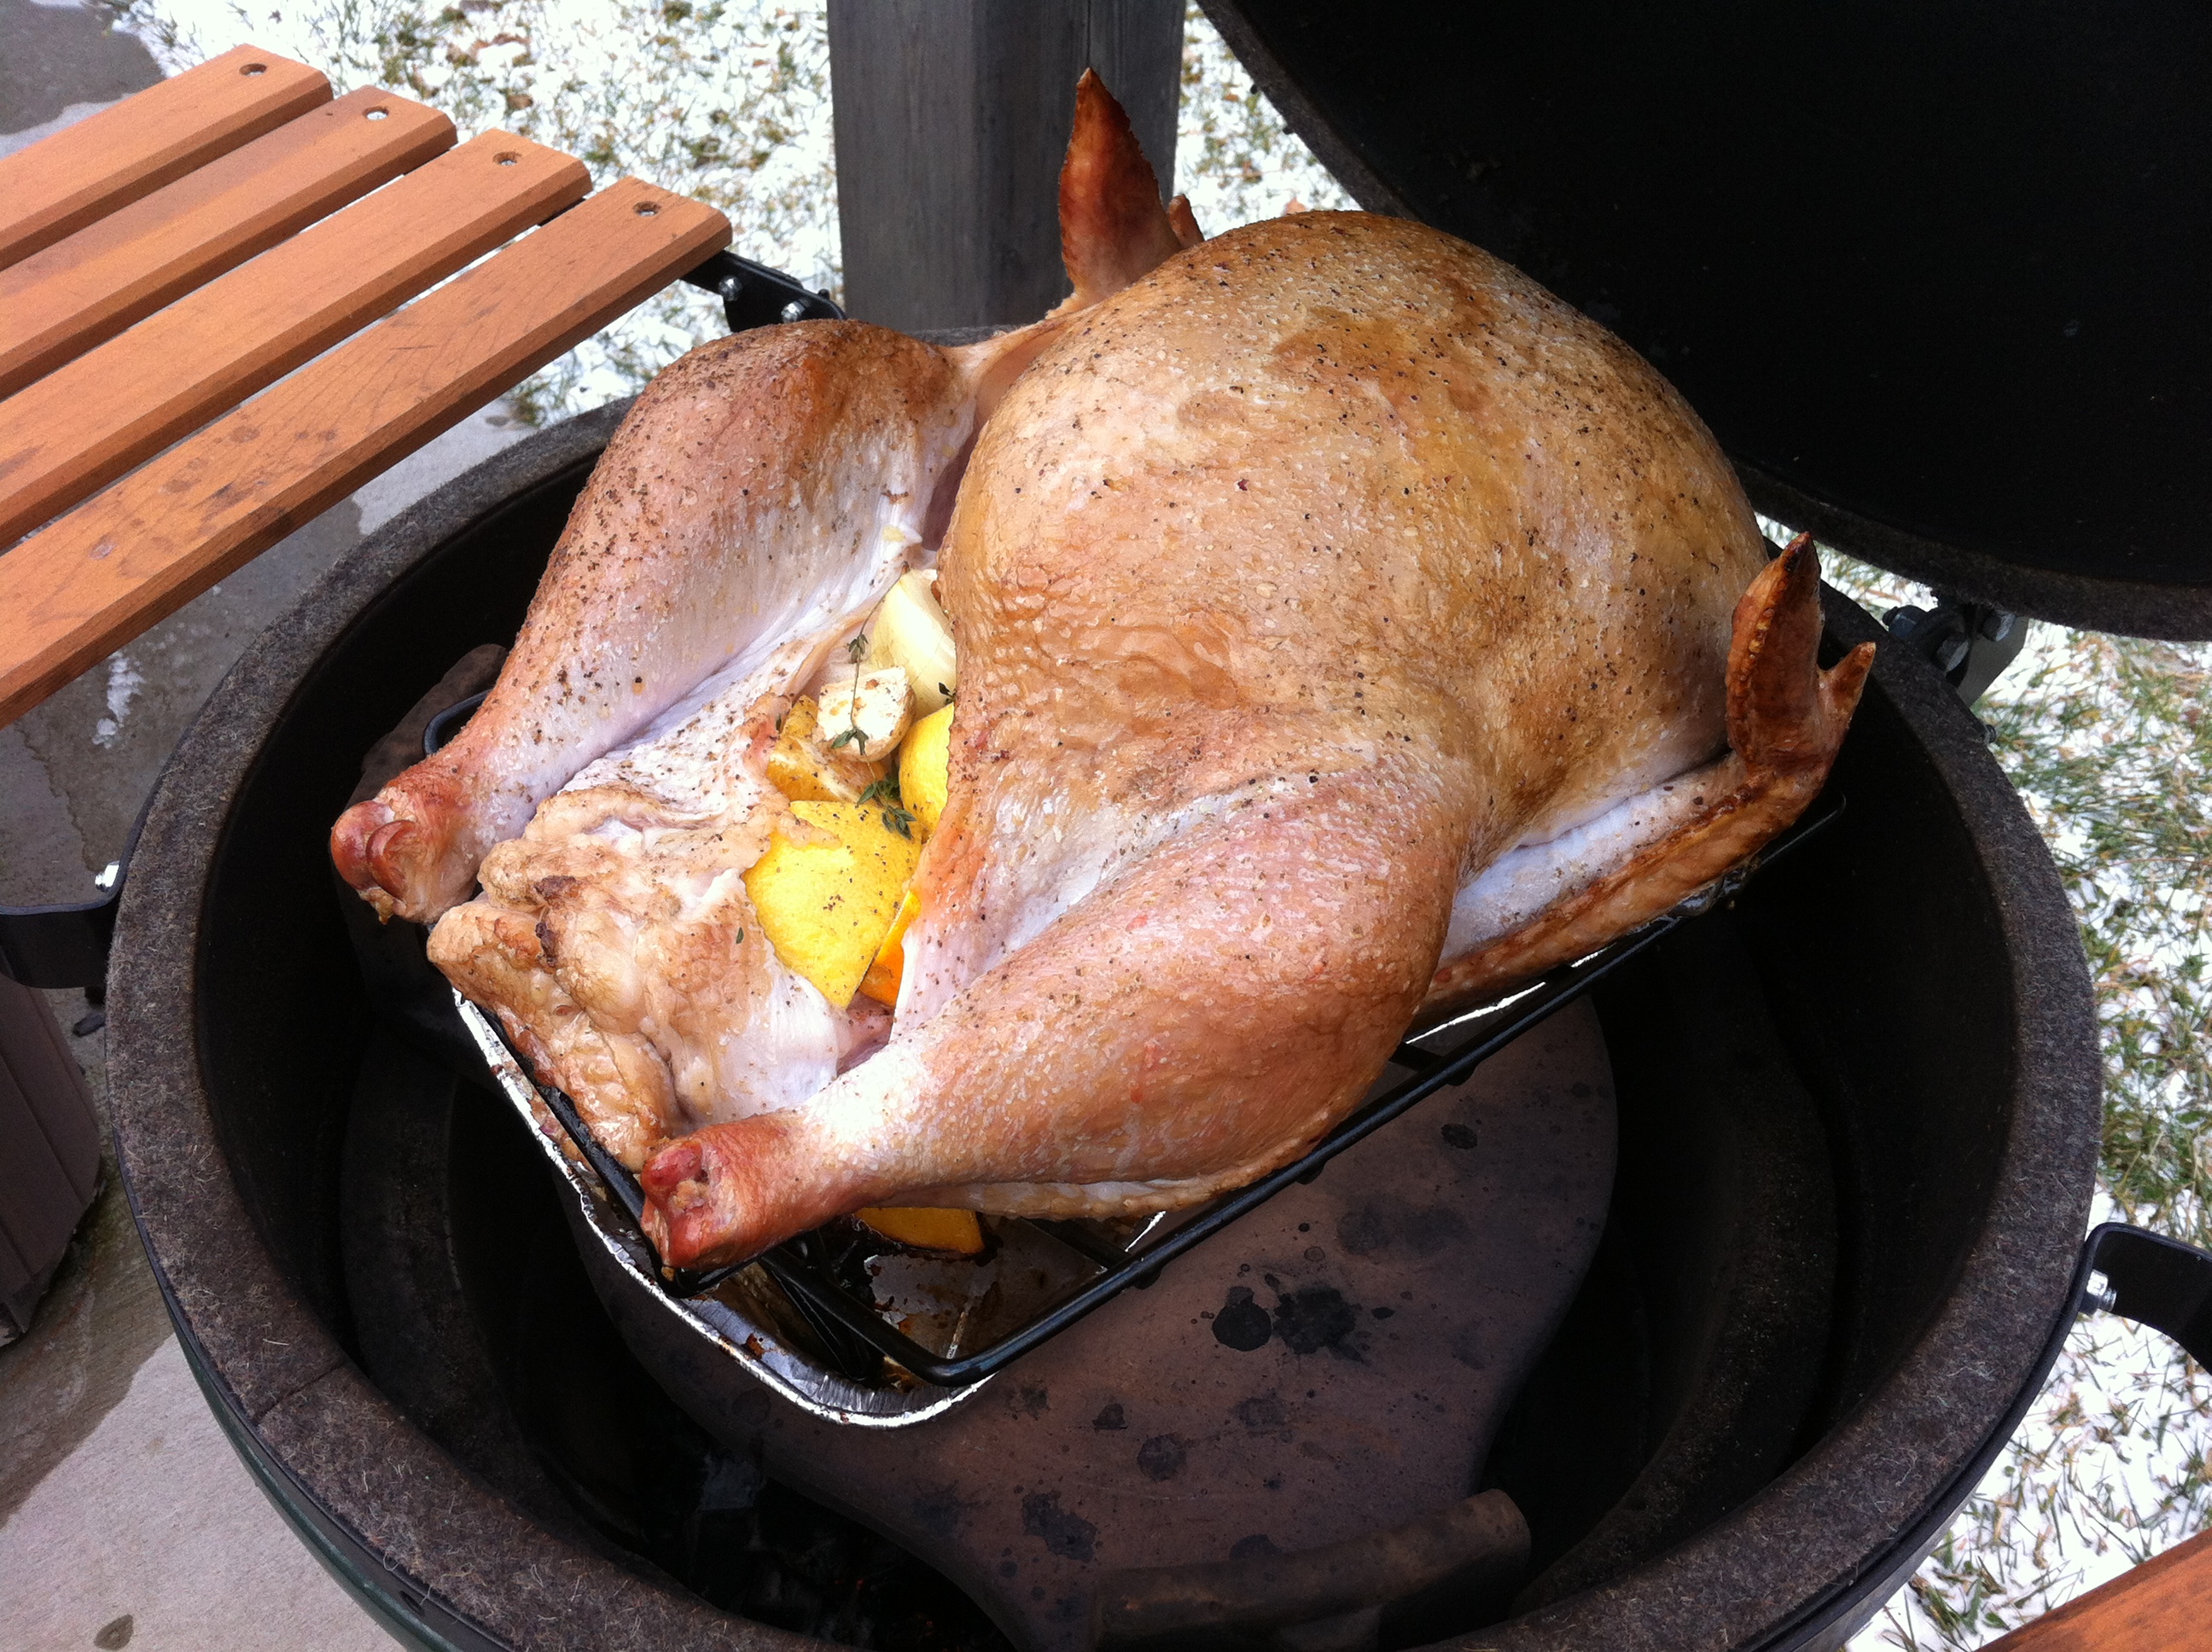 Turkey Cookin'